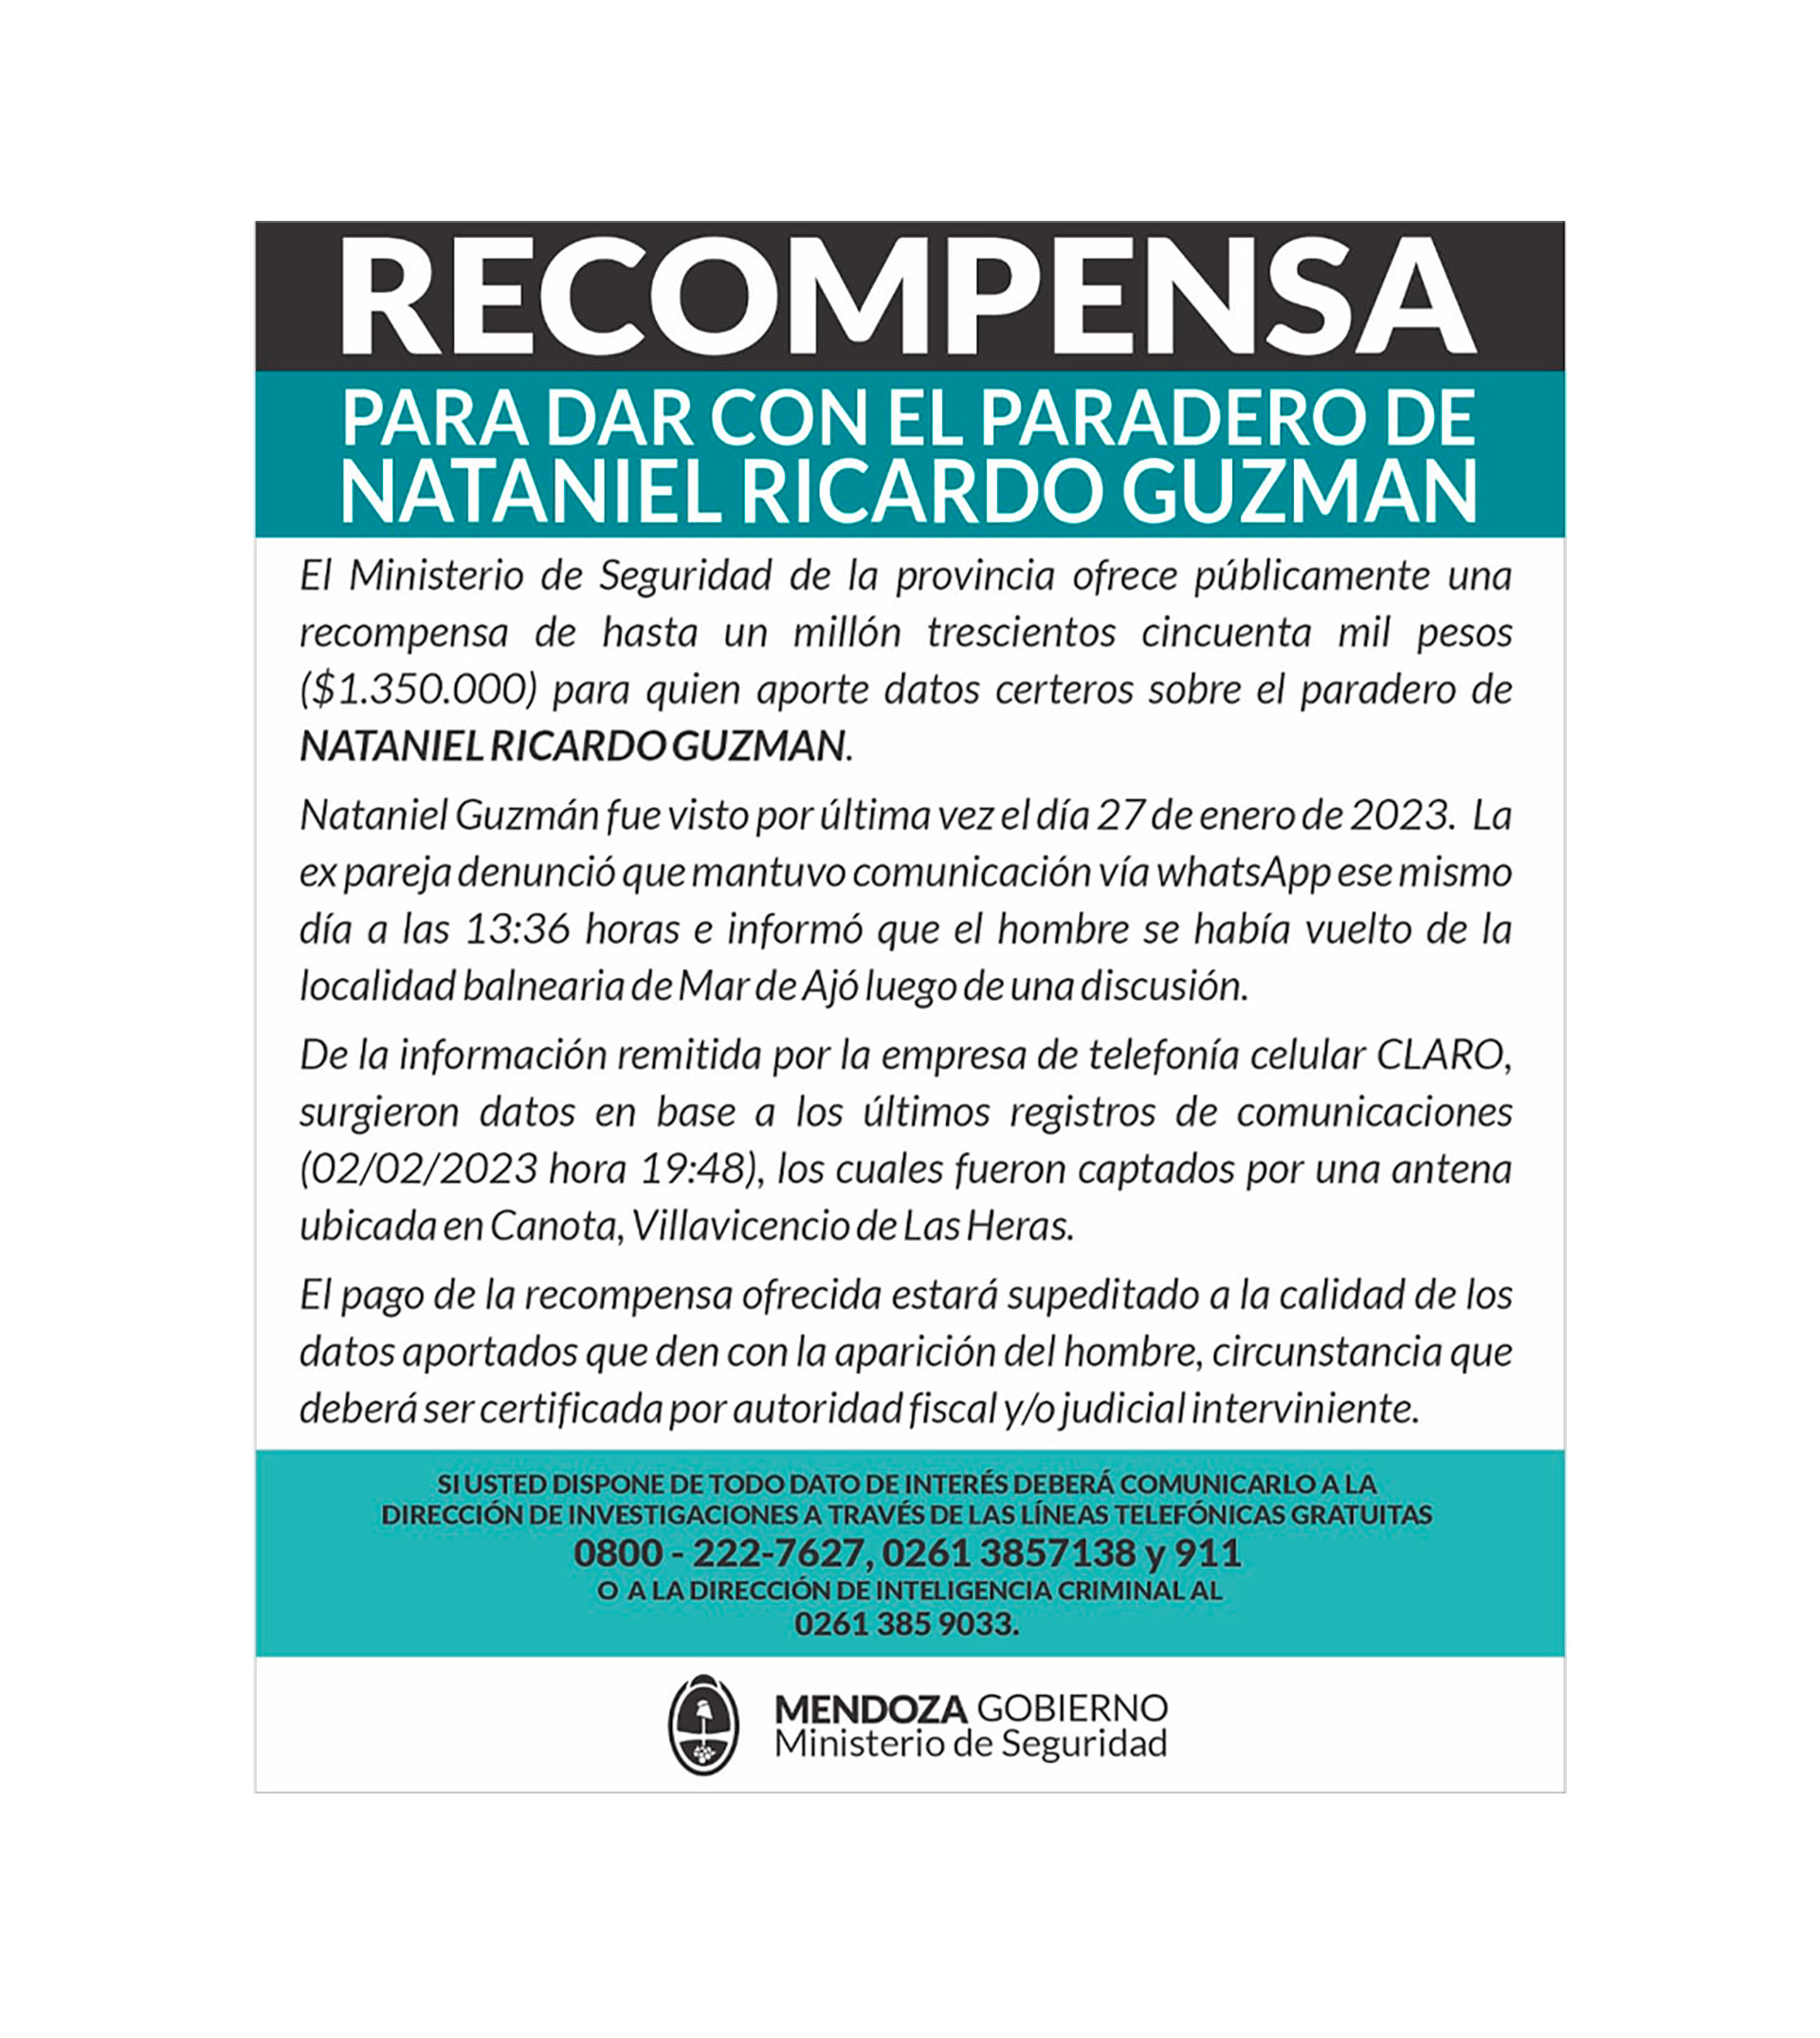 El Ministerio de Seguridad de Mendoza ofrece una recompensa de 1.350.000 de pesos a quien aporte datos certeros sobre el paradero de Nataniel Guzmán. 